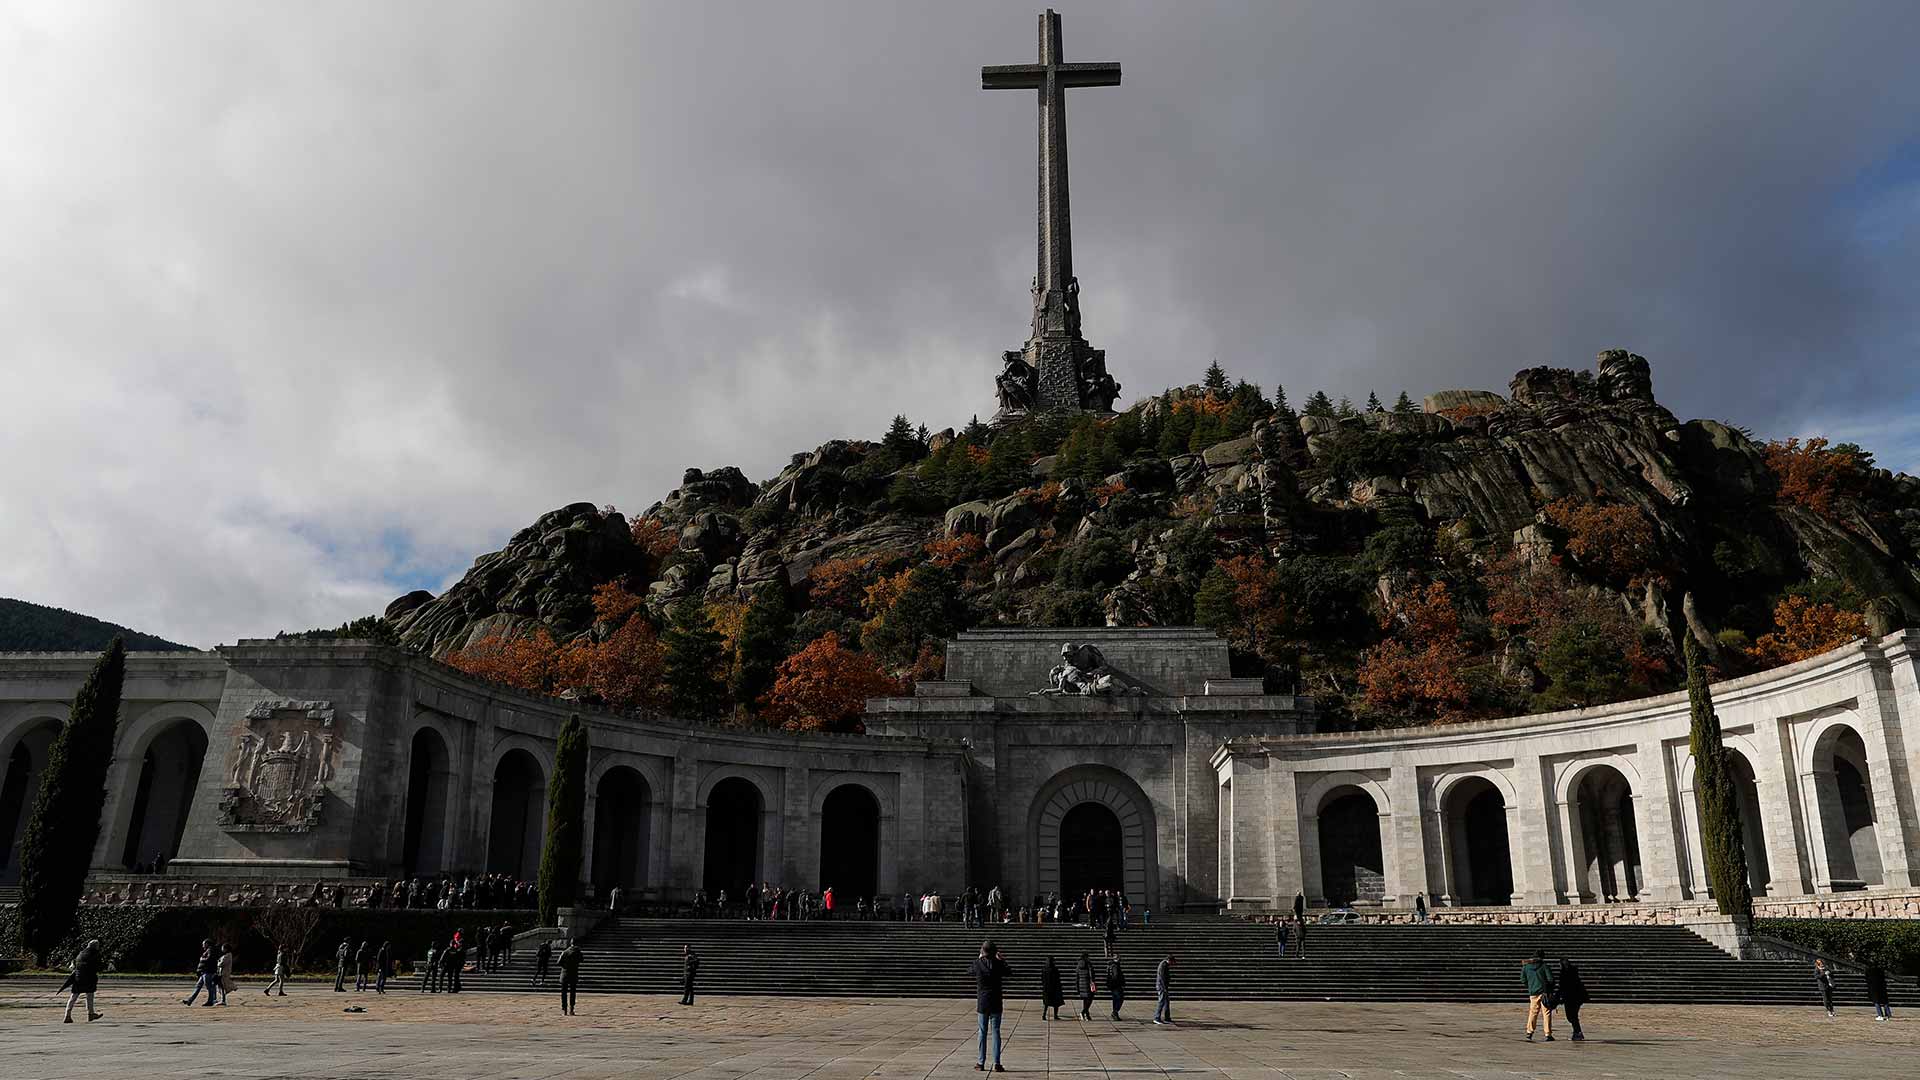 La Asociación Memoria Histórica denunciará al Estado si no se exhuma a Franco